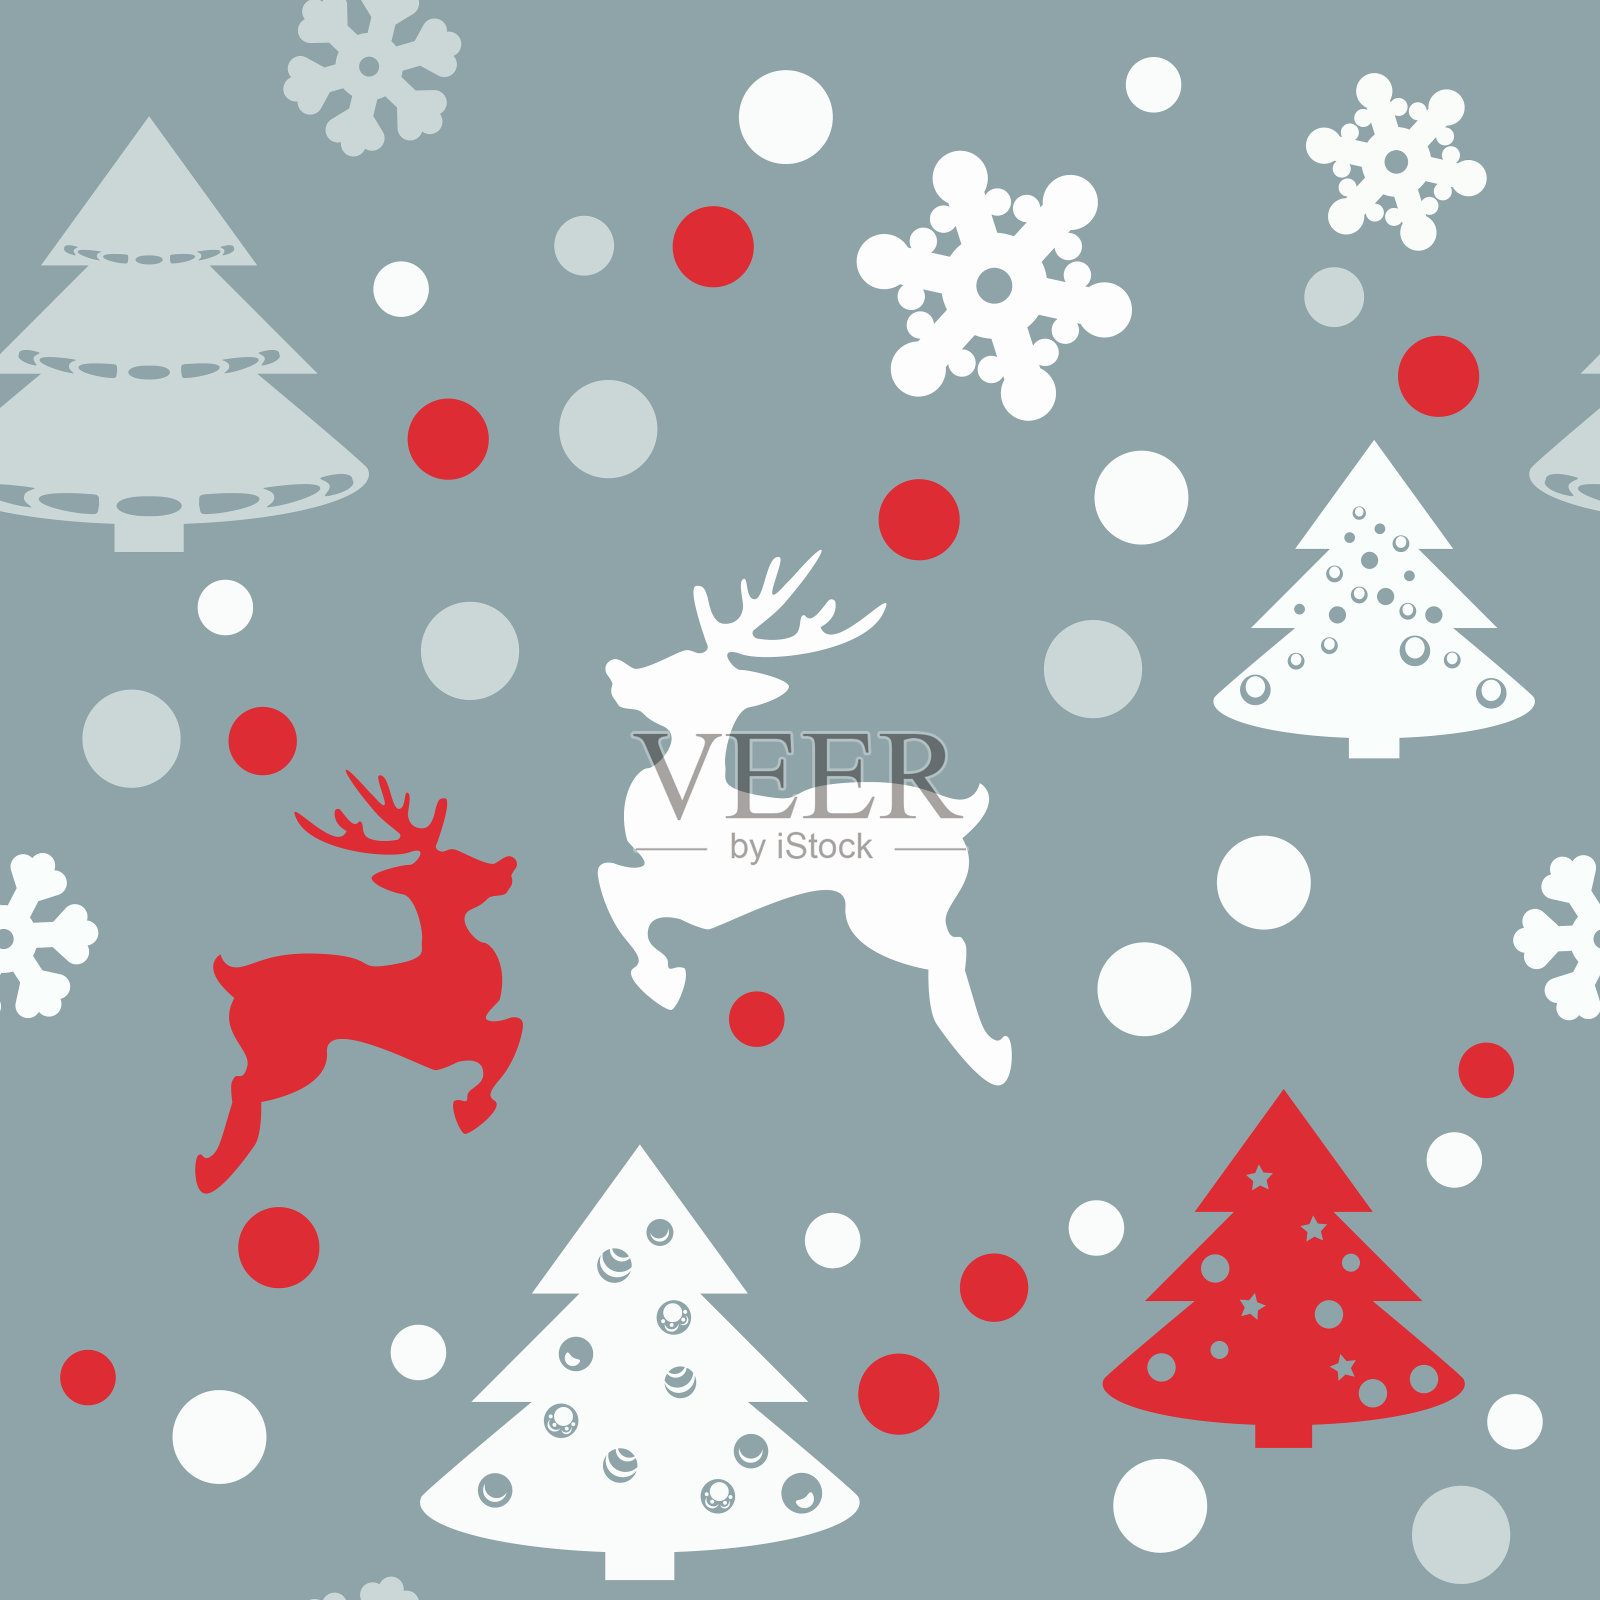 可爱的圣诞节无缝纹理在平的风格。假日符号和雪花在浅灰色的背景。每股收益10插画图片素材